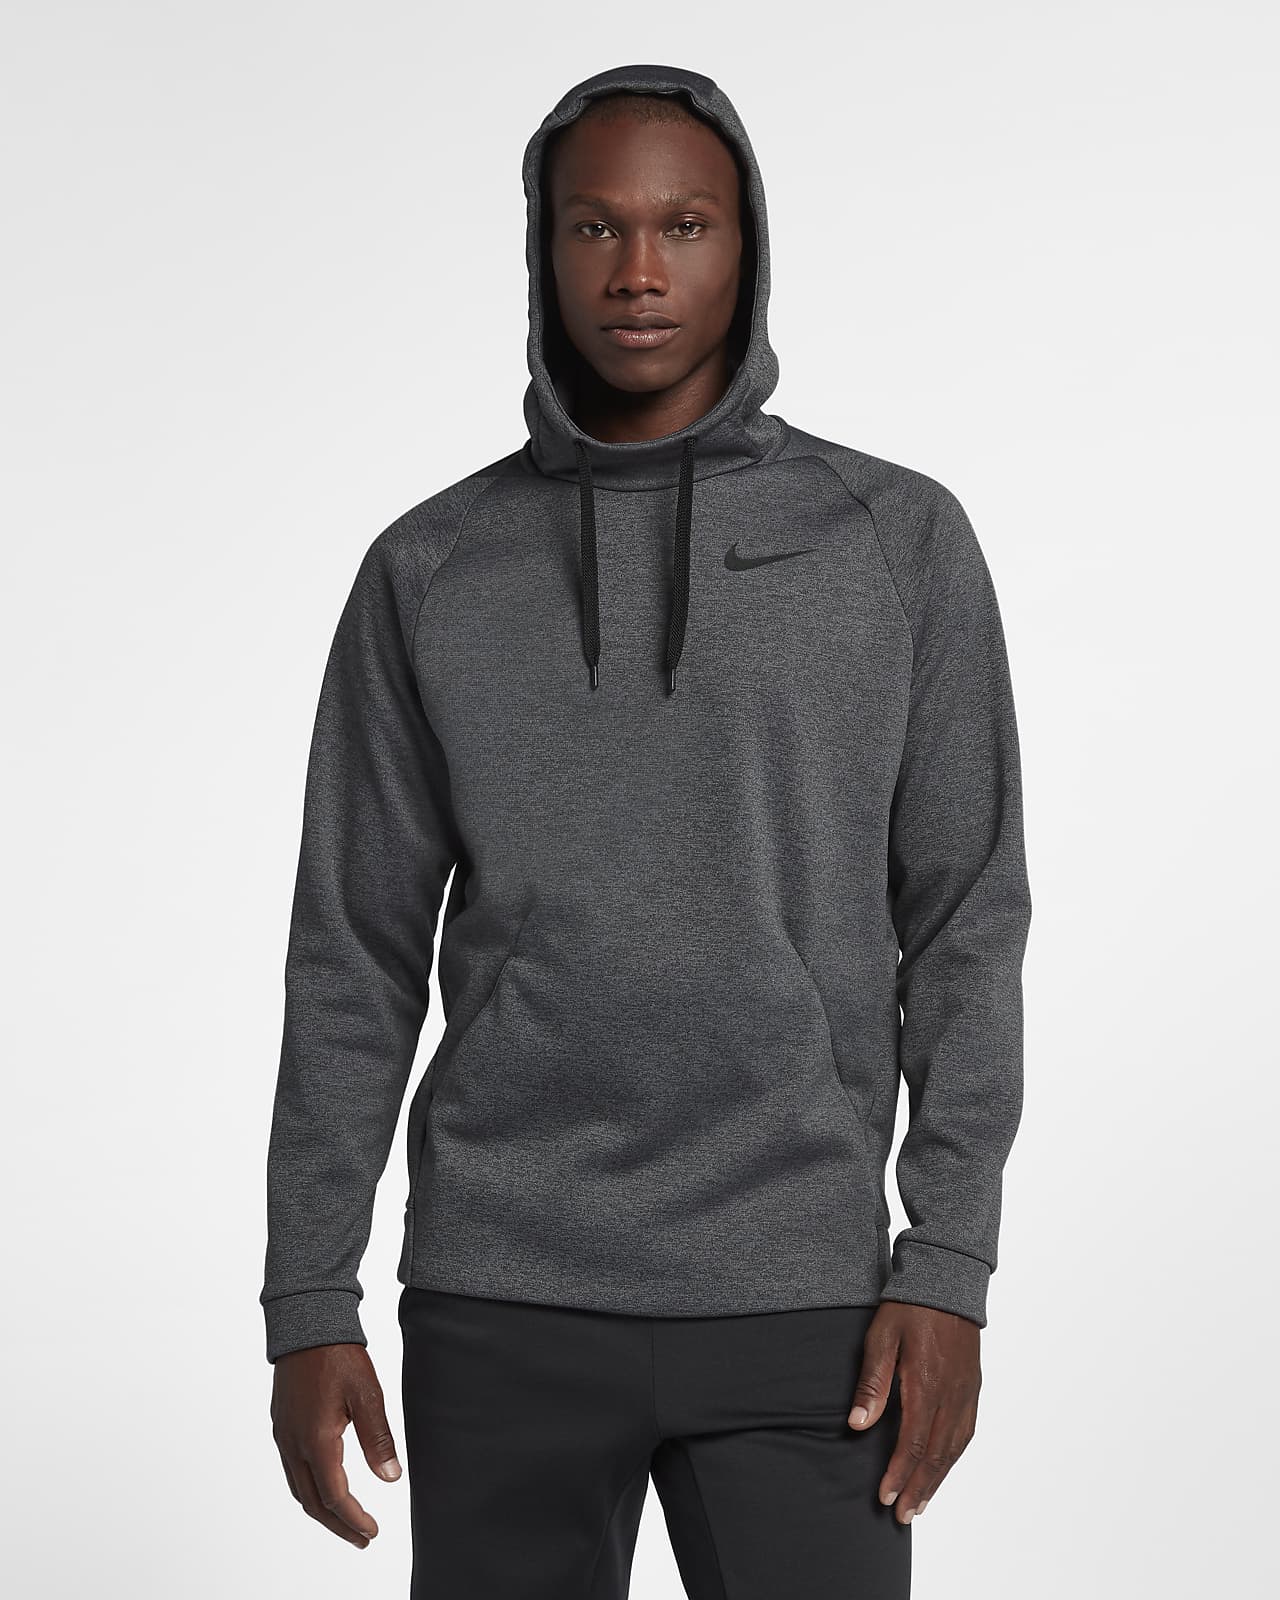 Sudadera con capucha de entrenamiento sin cierre para hombre Nike Therma.  Nike.com